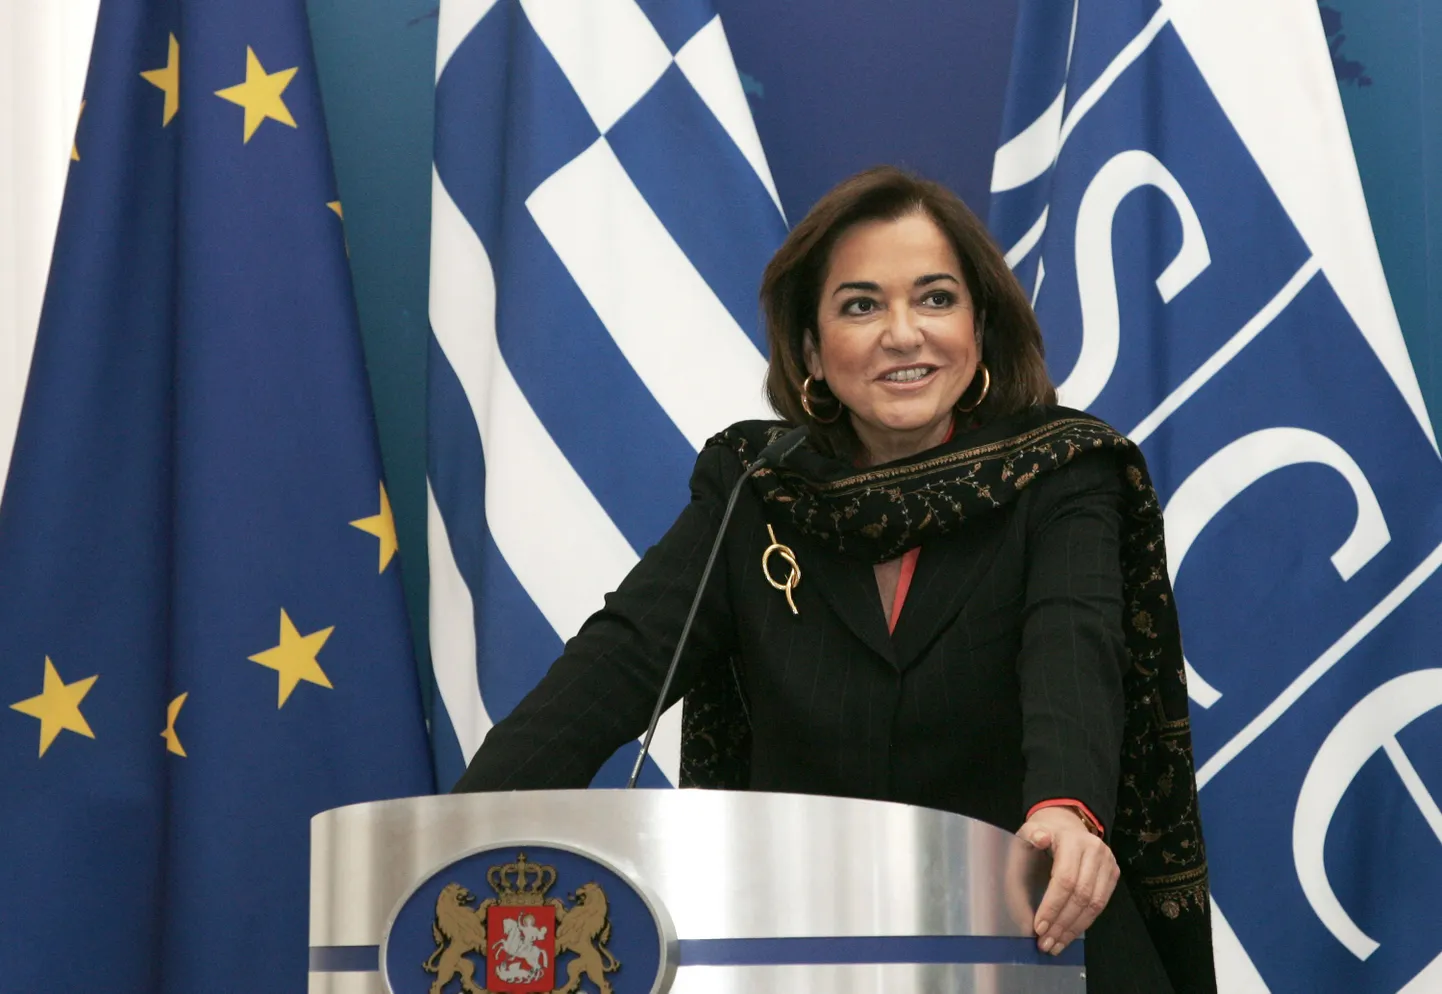 Kreeka välisminister ja praeguenb OSCE eesistuja Dora Bakoyannis.